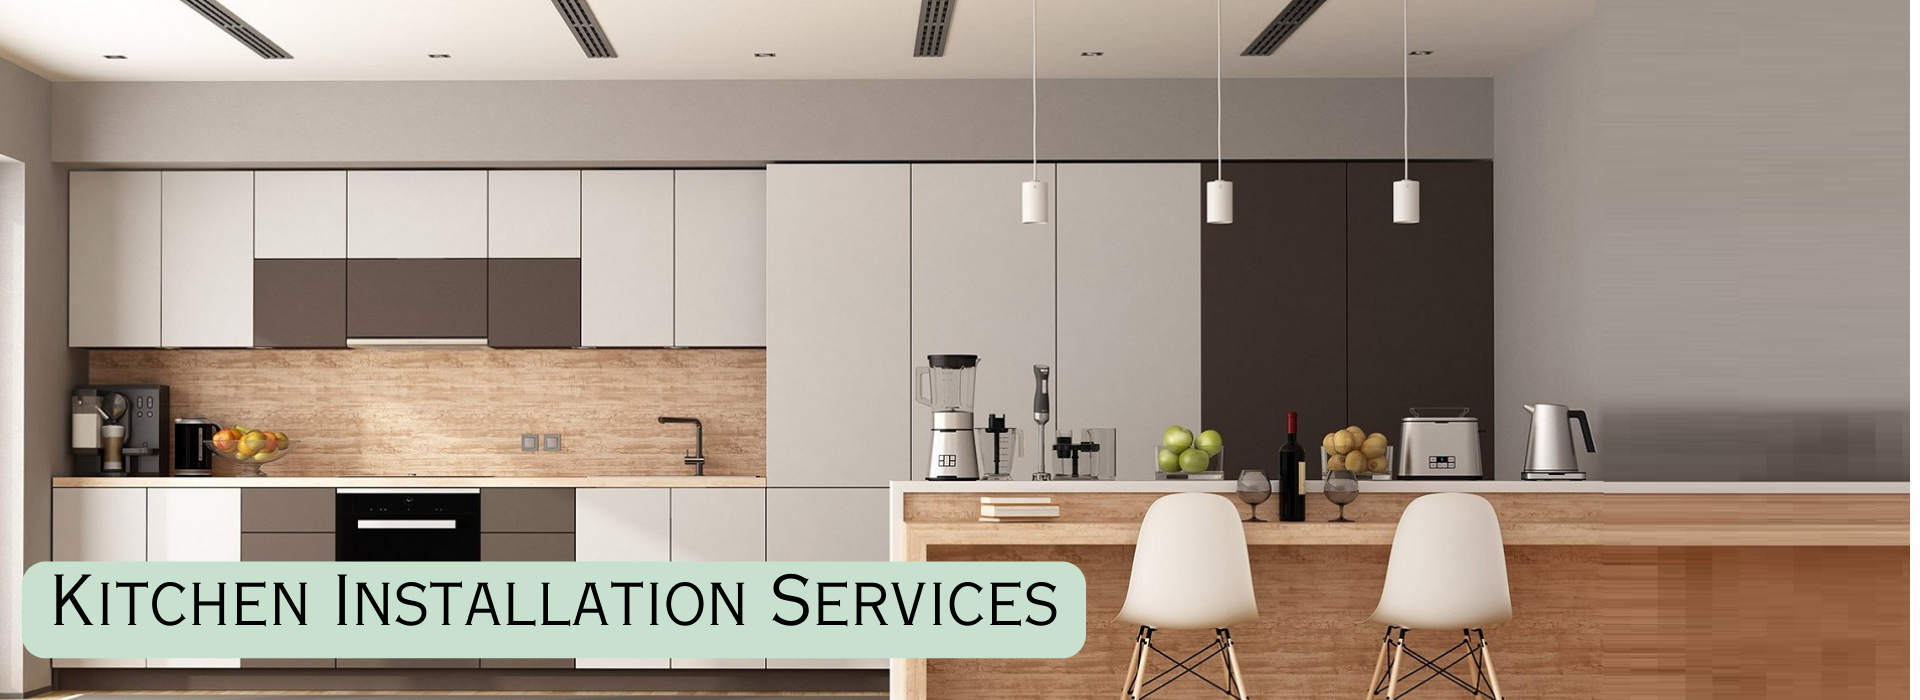 Kitchen Installation Services 2 